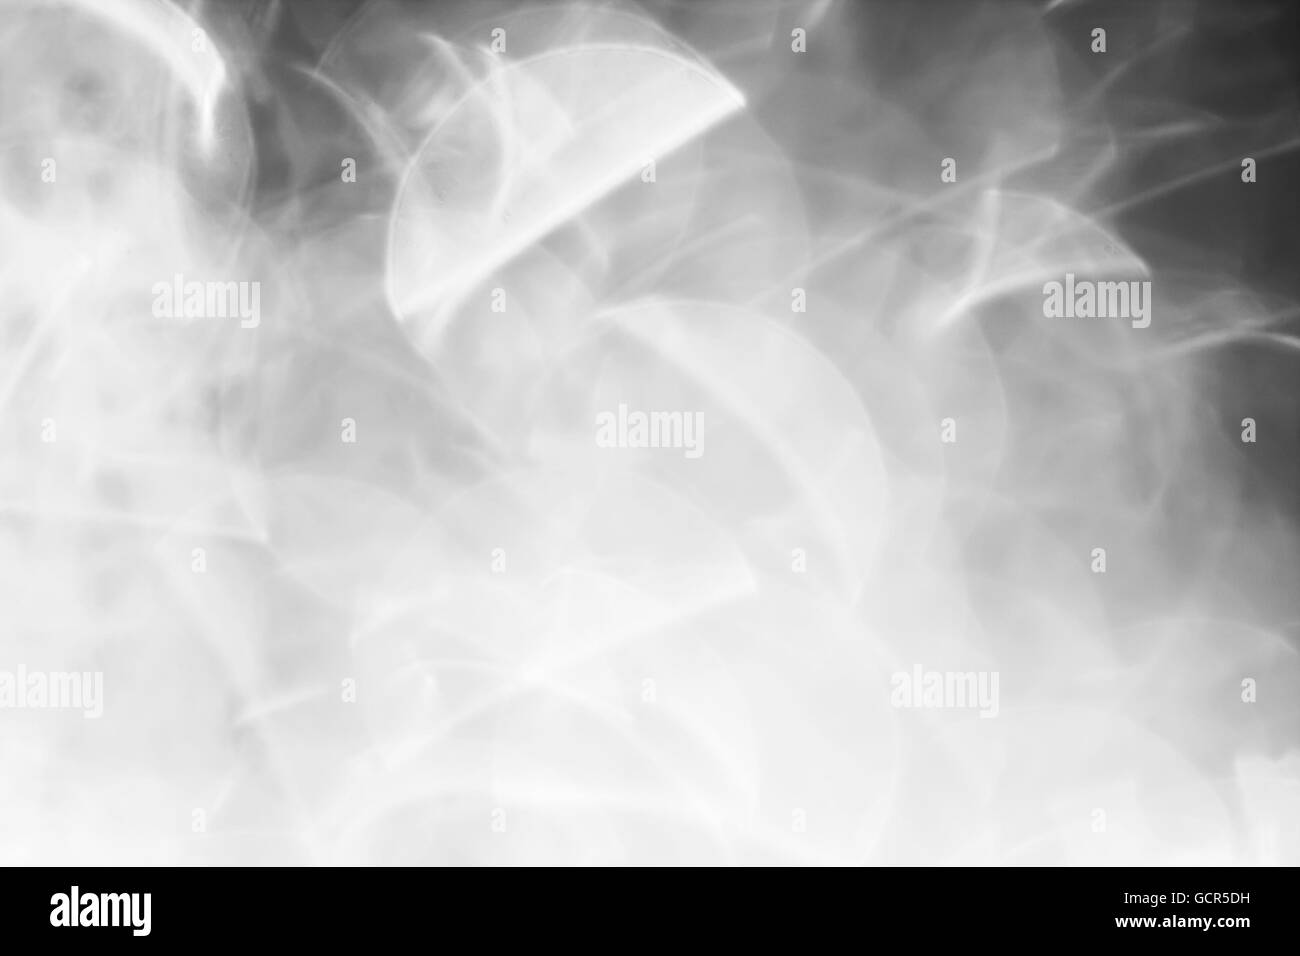 Zusammenfassung Hintergrund von Graustufen von Blendenfleck Stockfoto